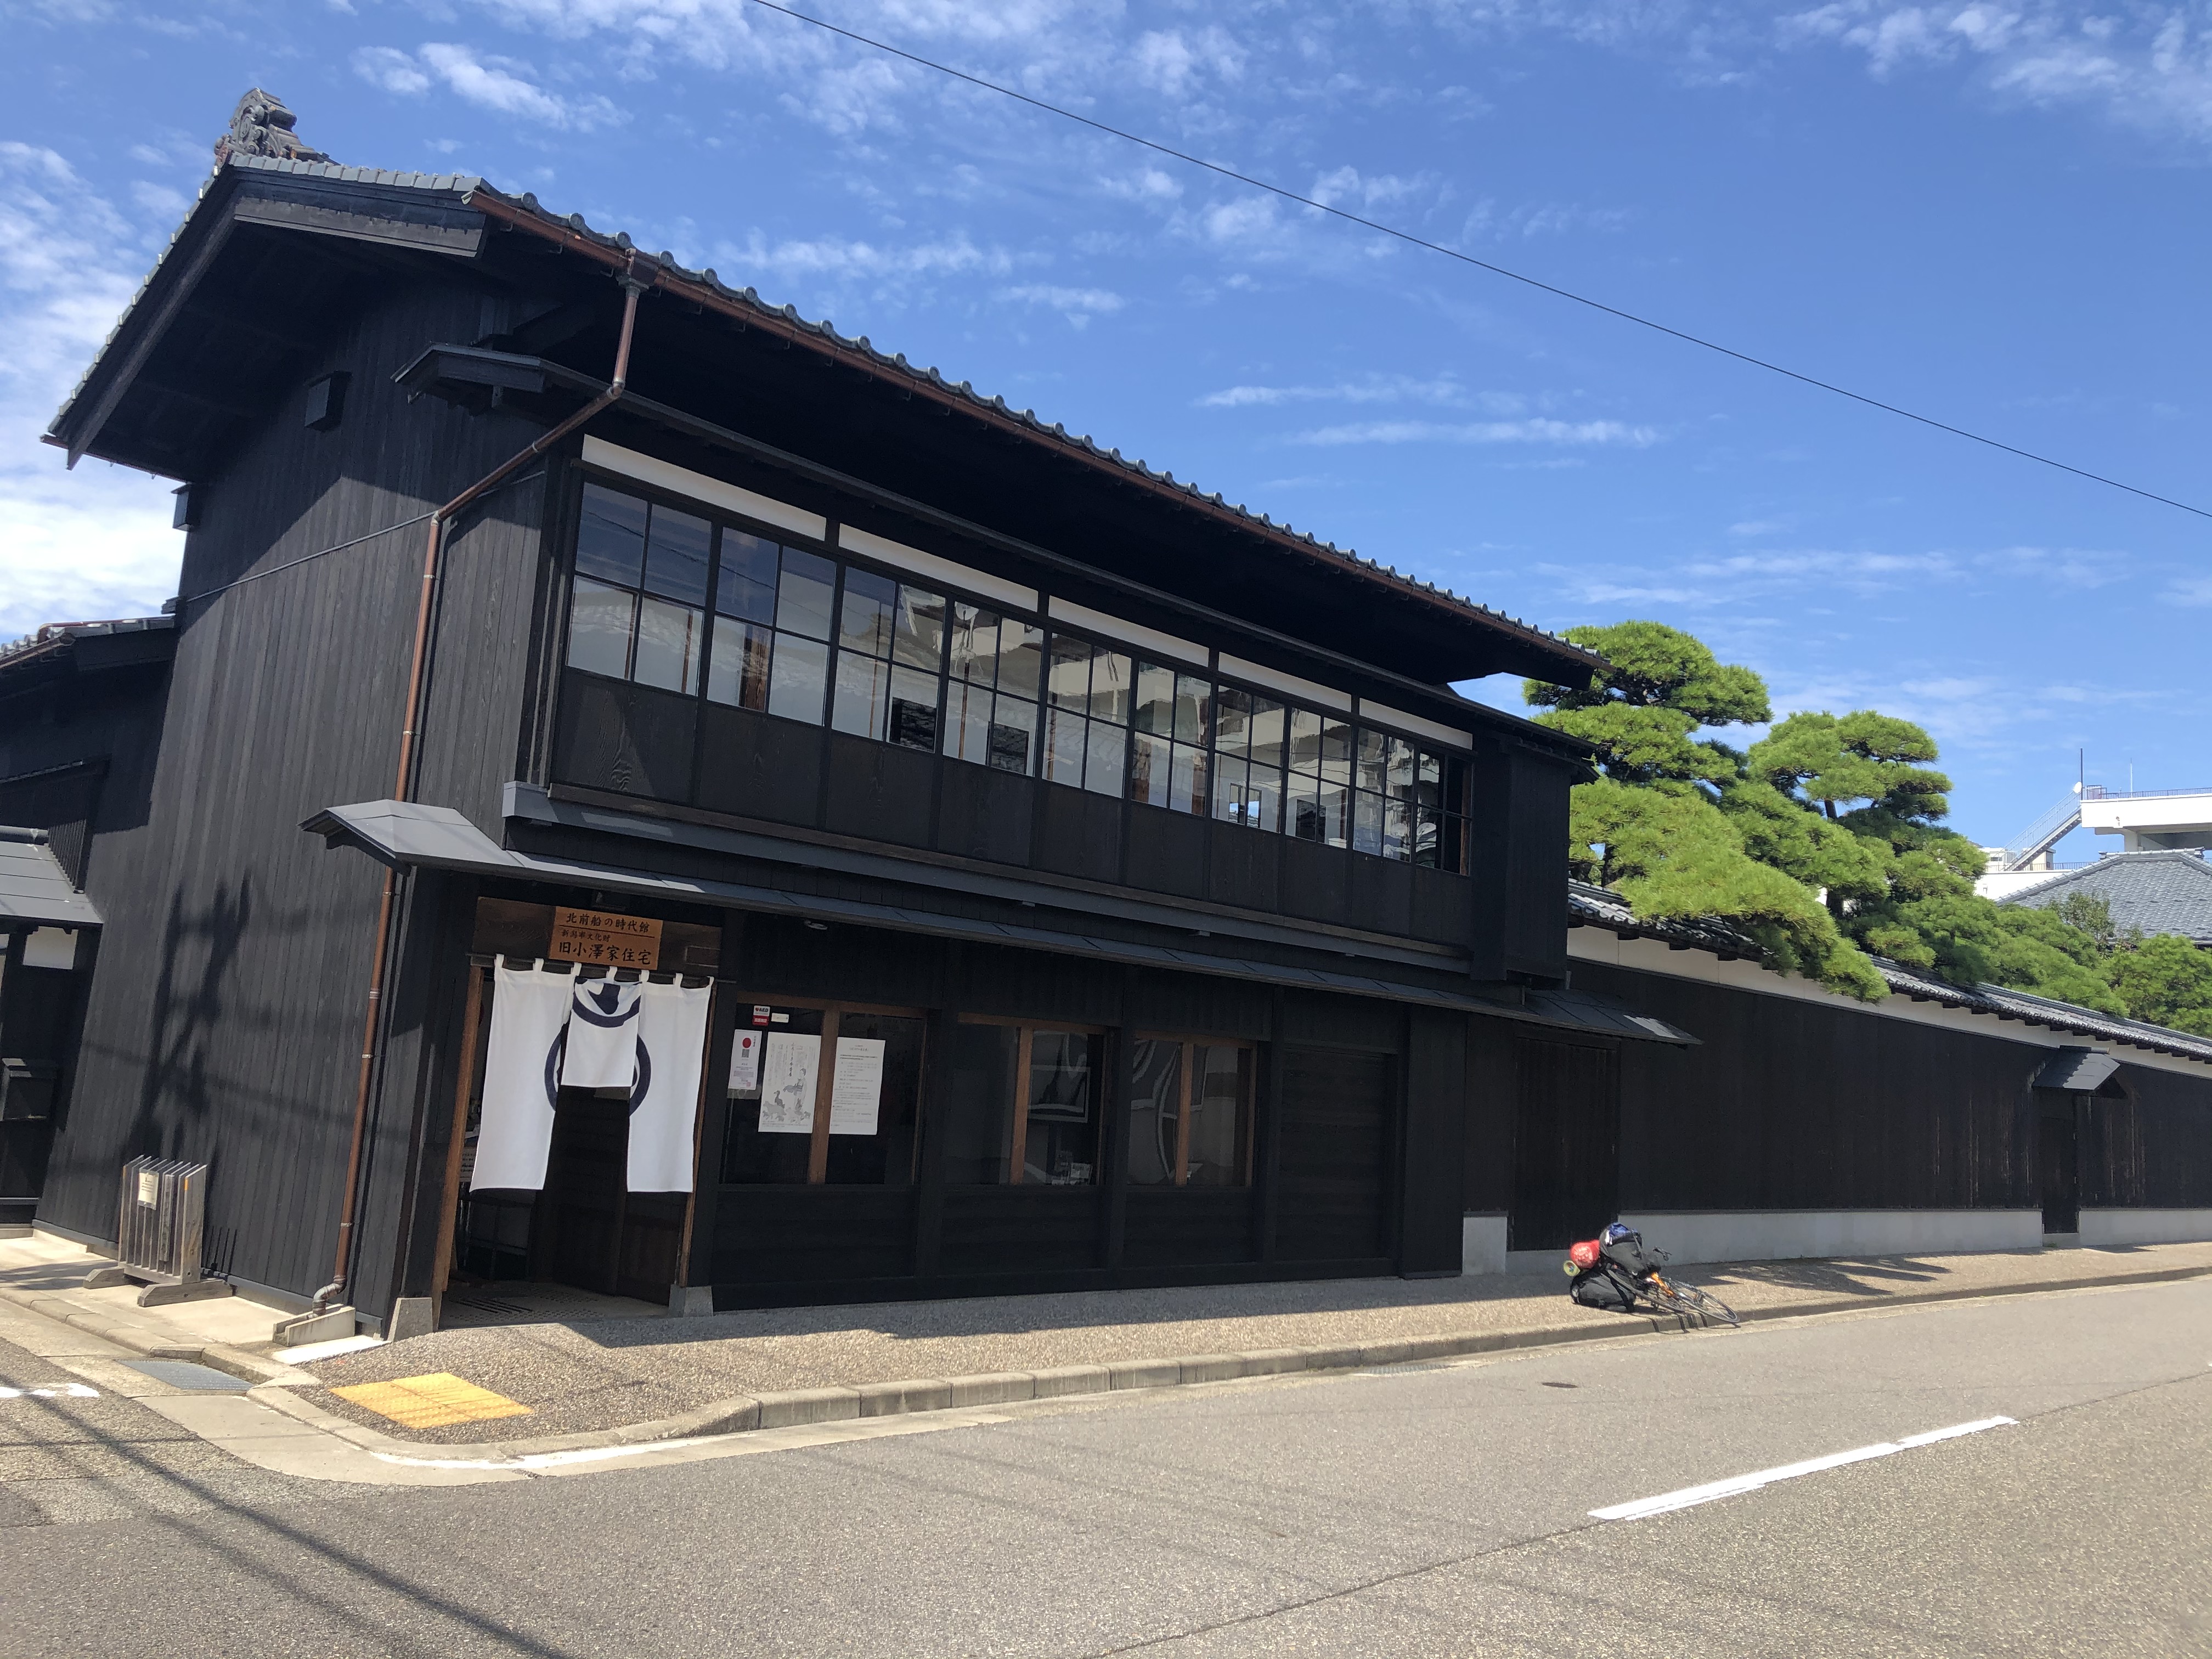 北前船の時代館として新潟市の文化財「旧小澤家住宅」が一般公開されて10年目、一見の価値あり。